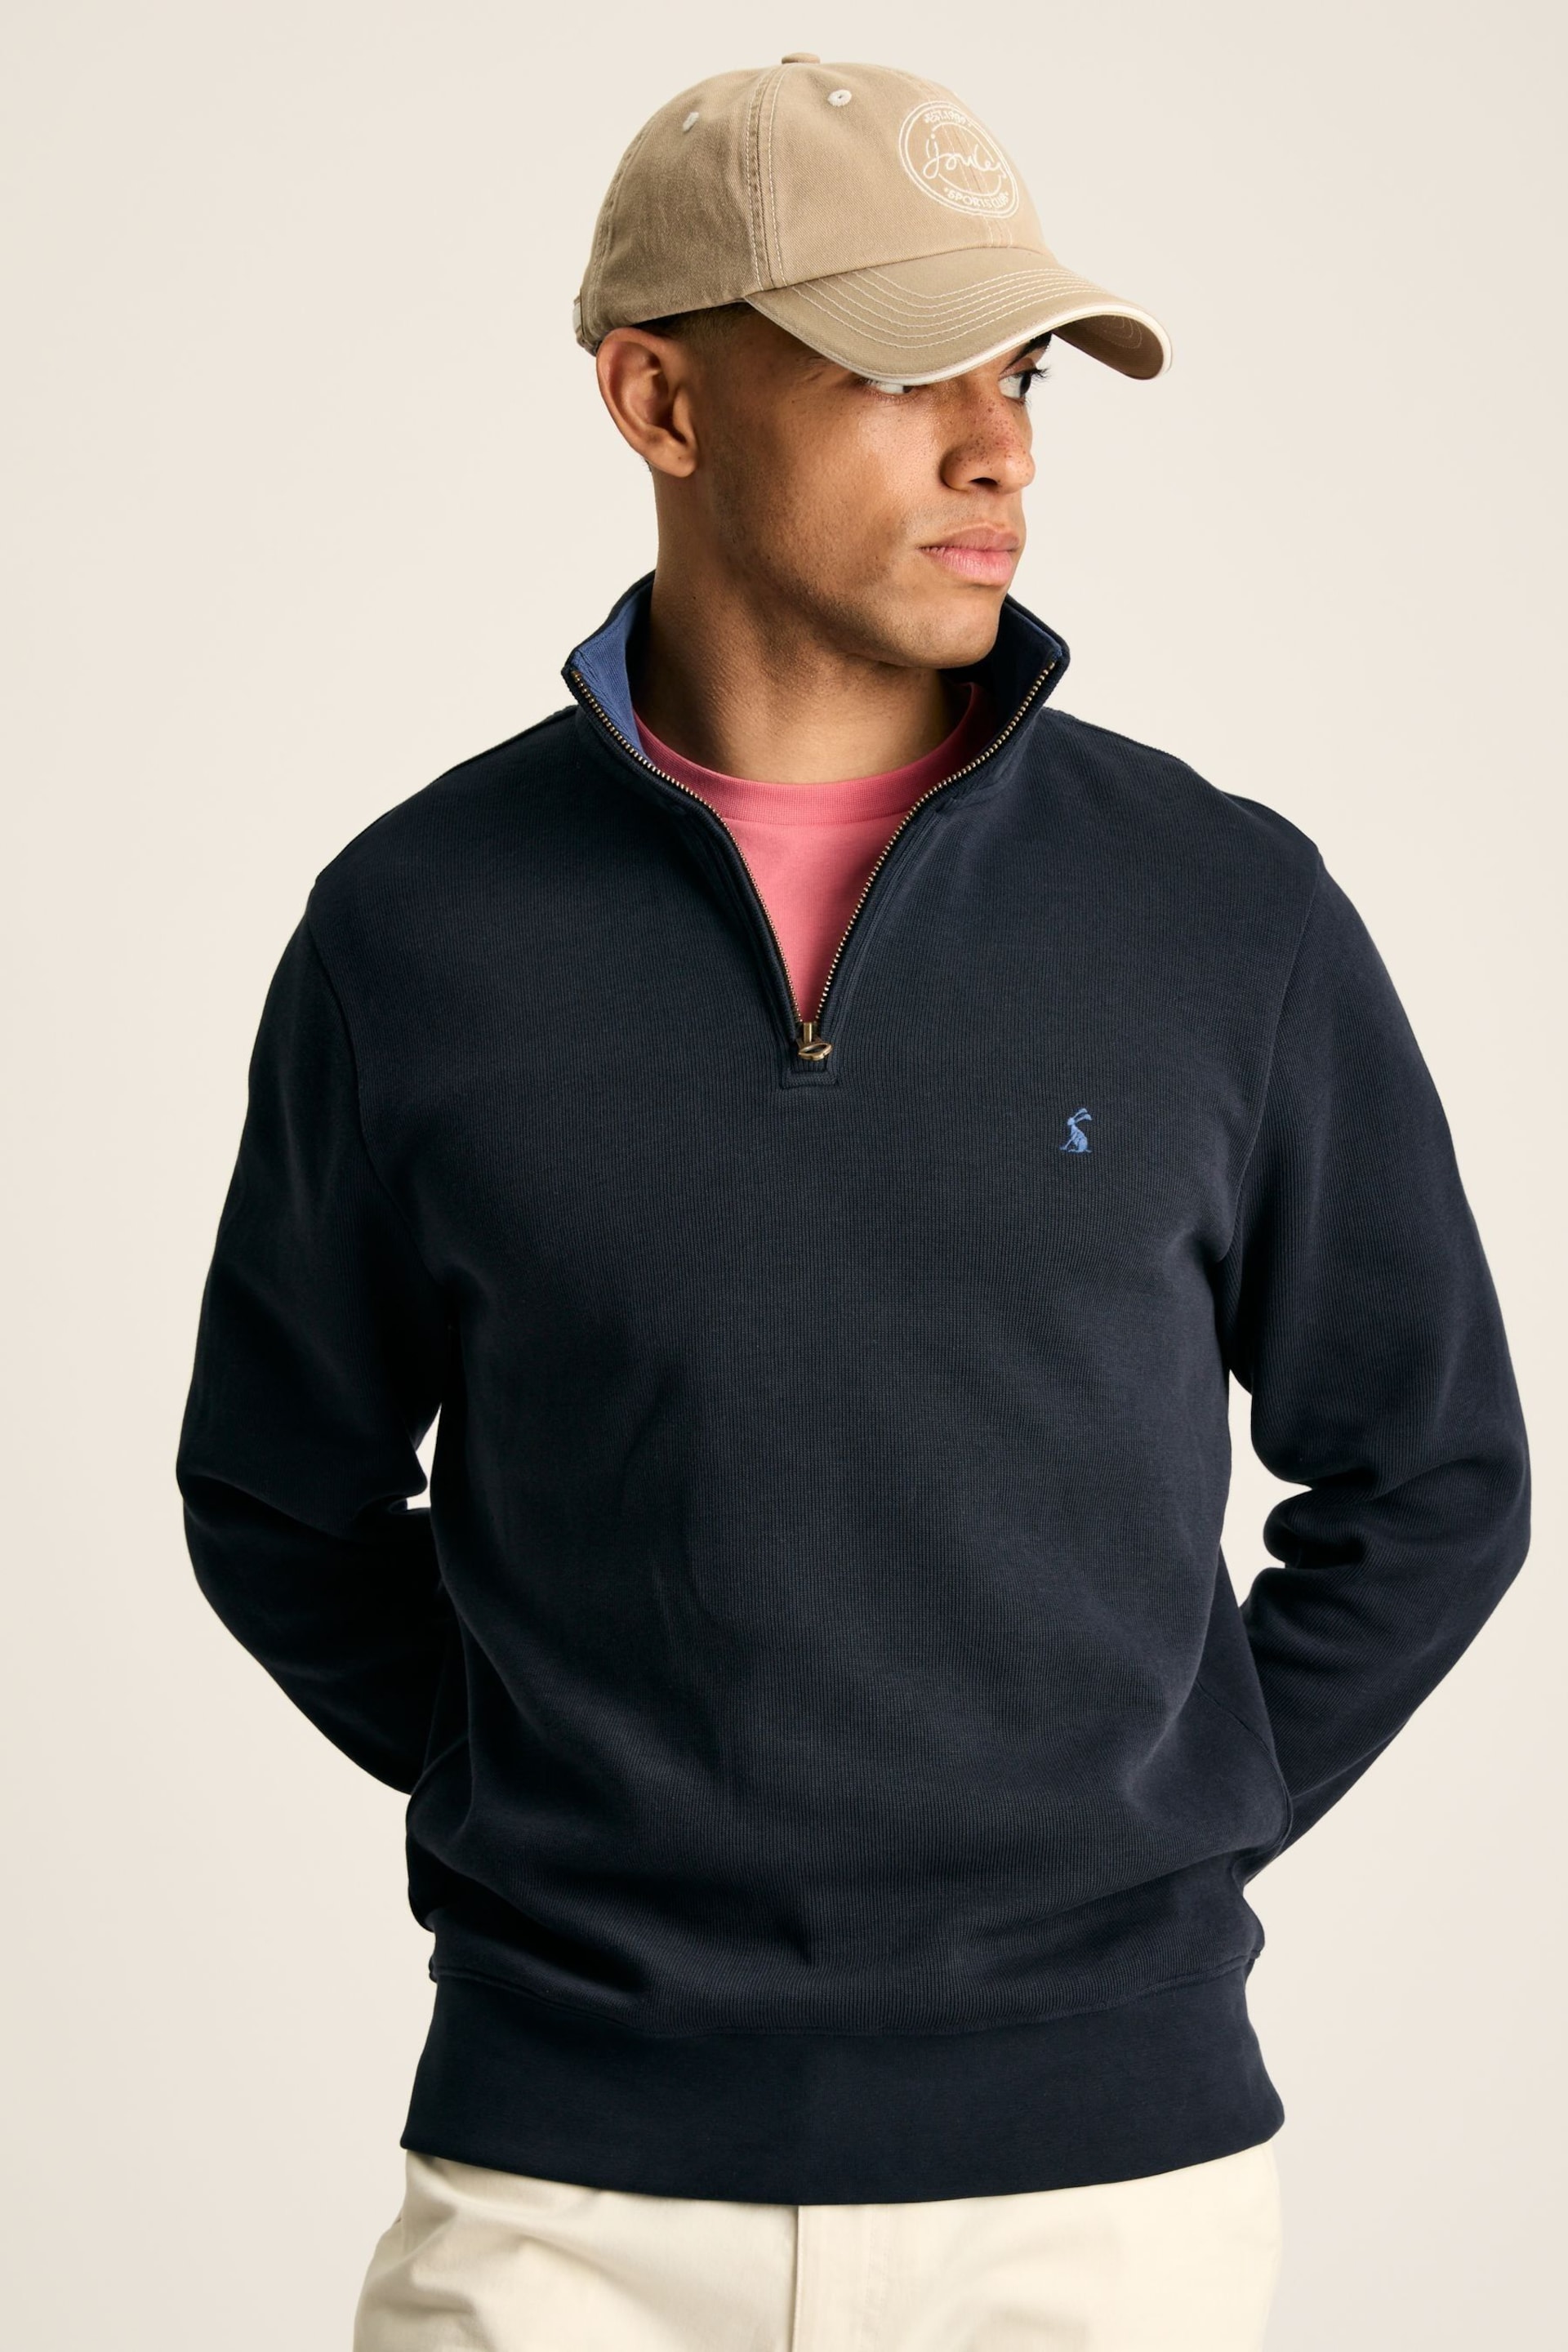 Joules Alistair Navy Quarter Zip Cotton Sweatshirt - Image 1 of 7